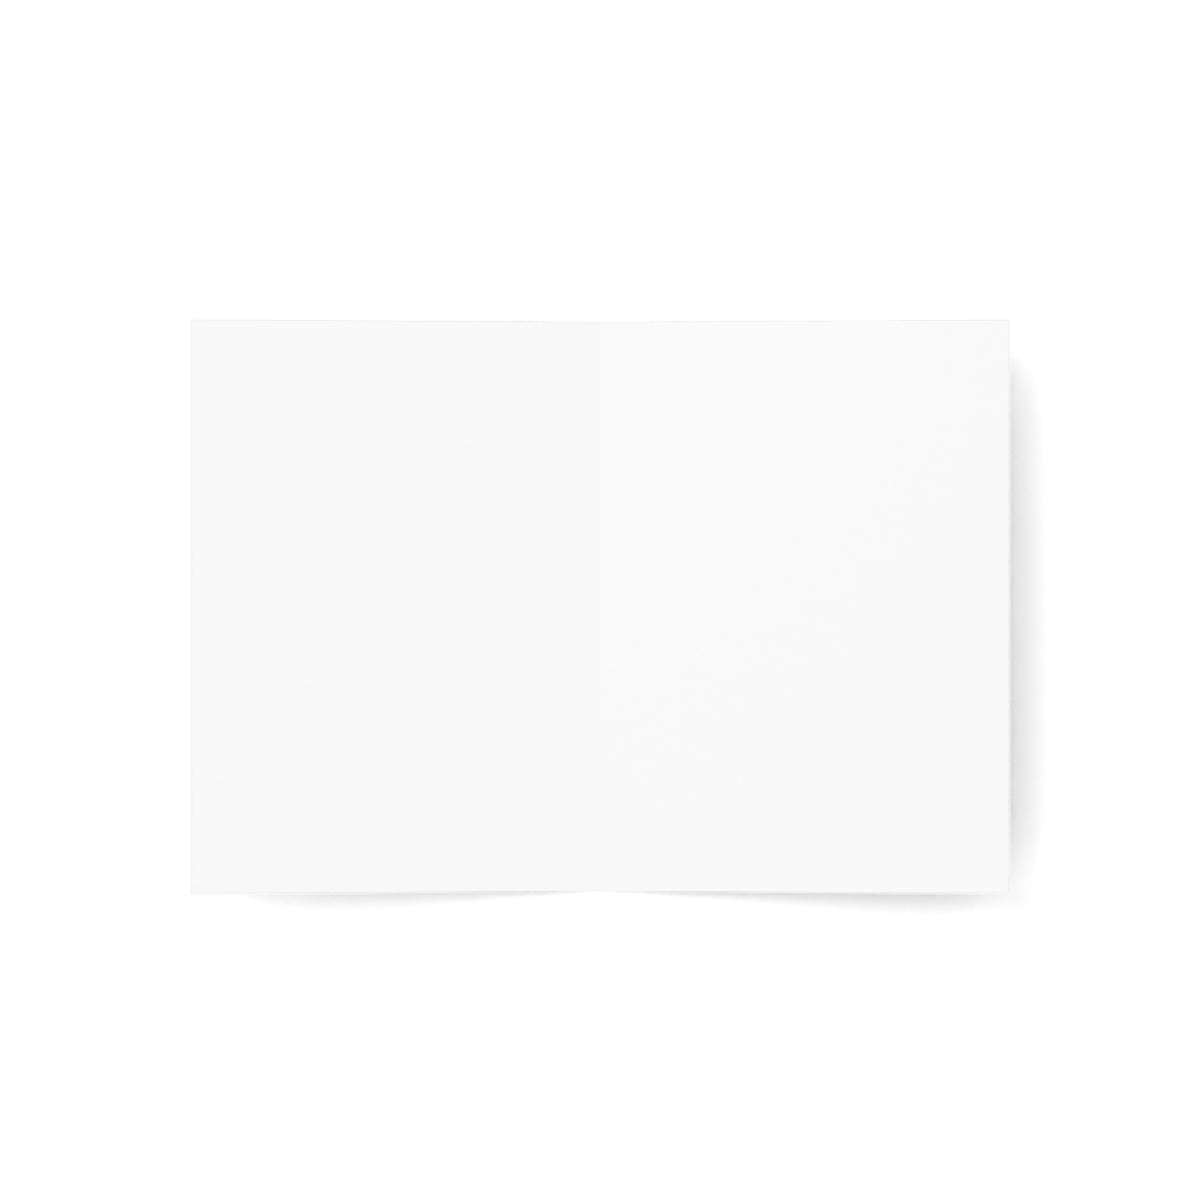 Cartes de notes mates pliées Charleston + enveloppes (10 pièces) 